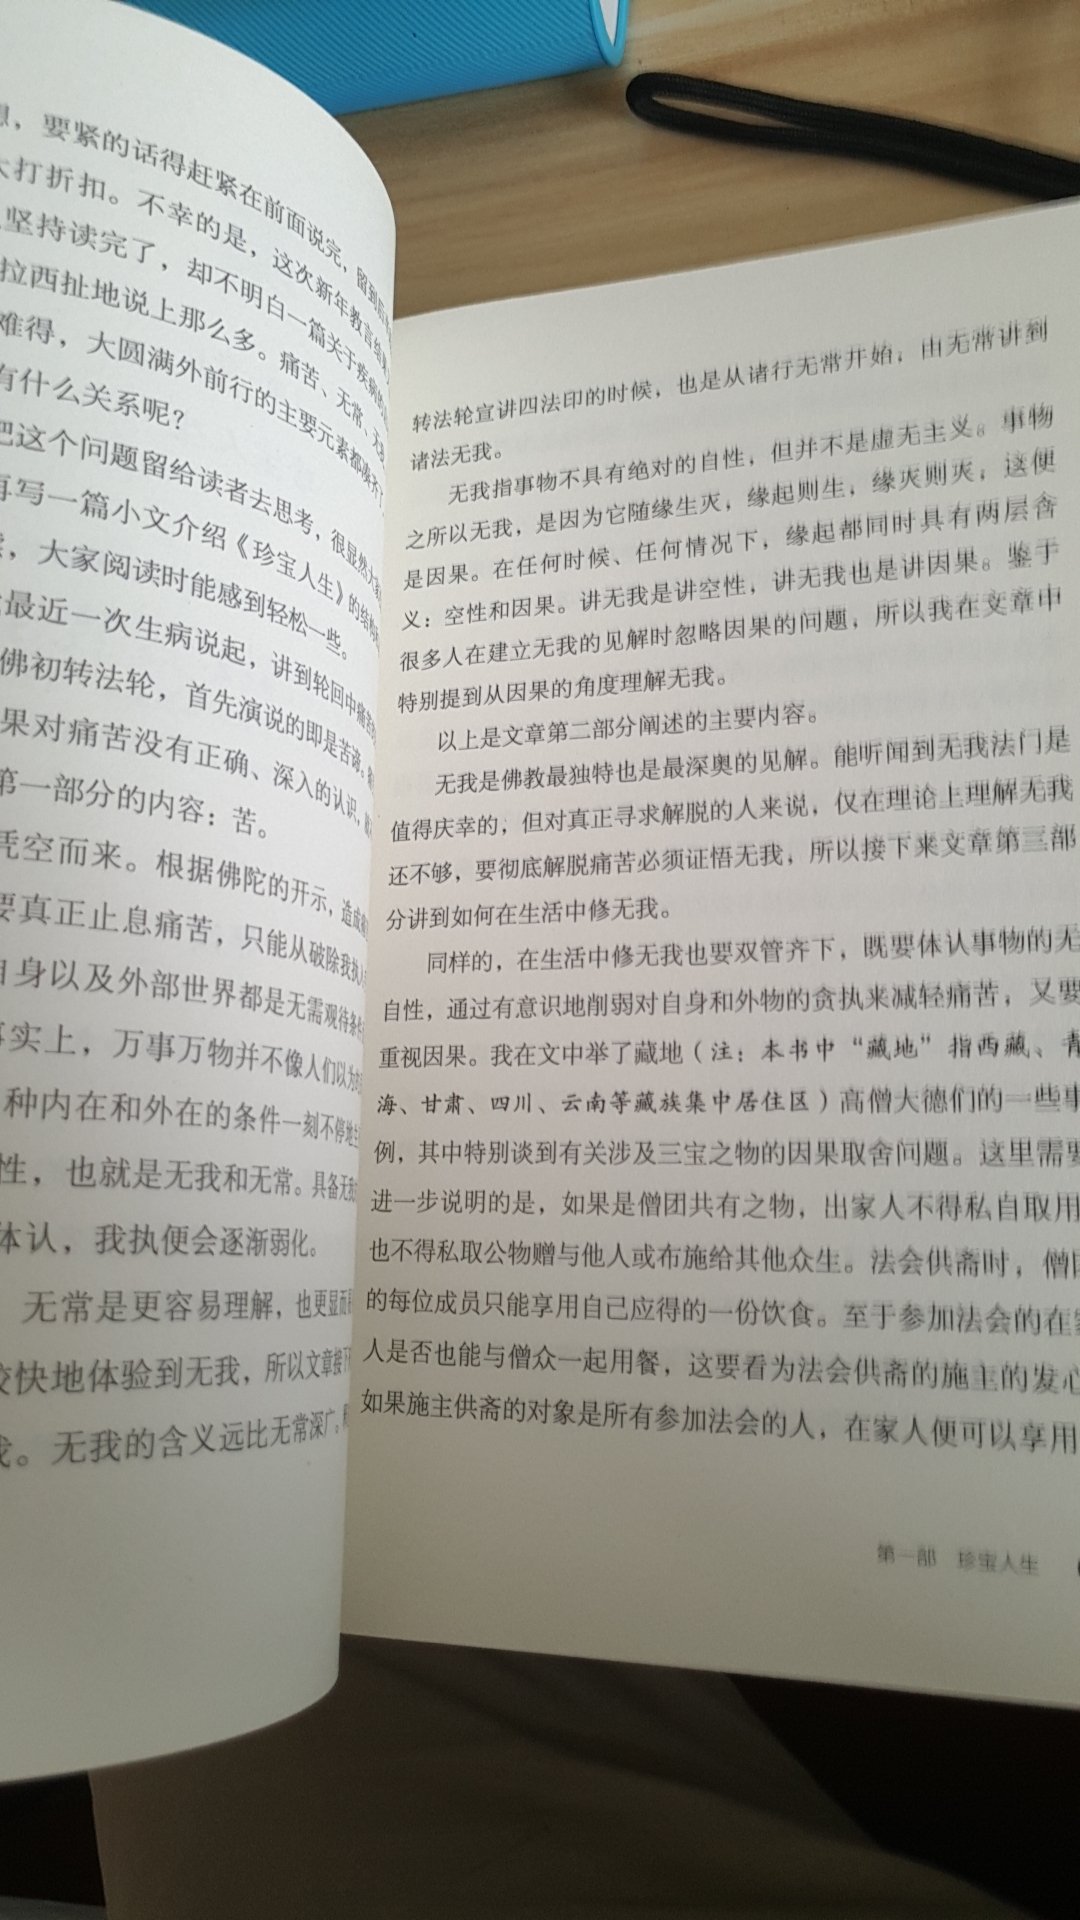 书印刷精美，纸张不错，并且内容也是直白的，浅显易懂不深奥。买来经常修养身心用。近来西藏有不少大师出版这种浅显的著作，非常适合初学人研读。很不错